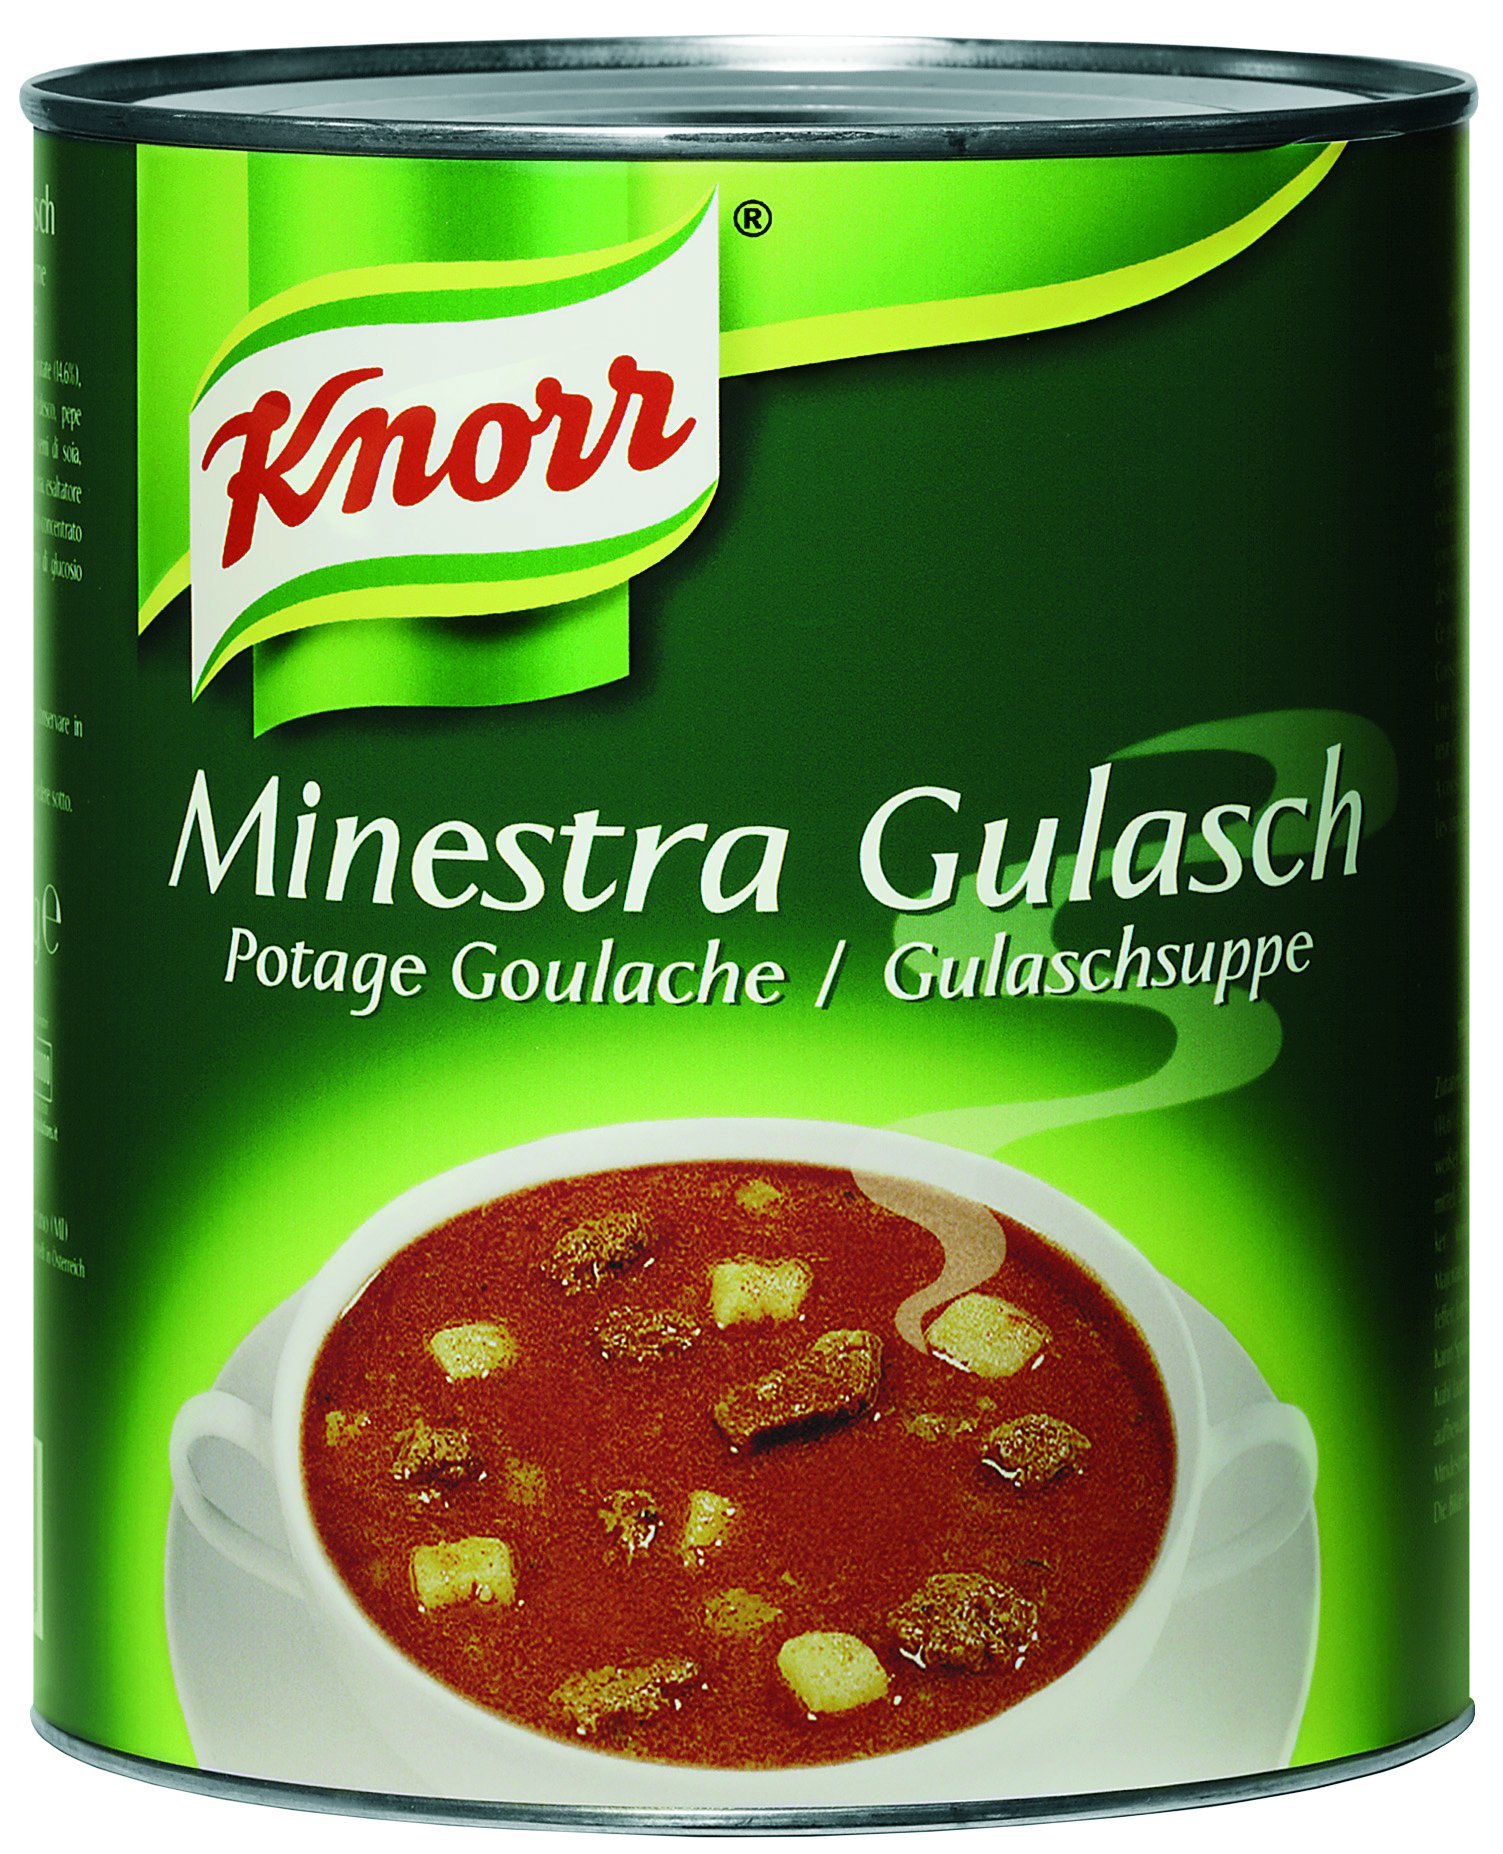 Knorr Minestra Gulasch 2,9 Kg - 